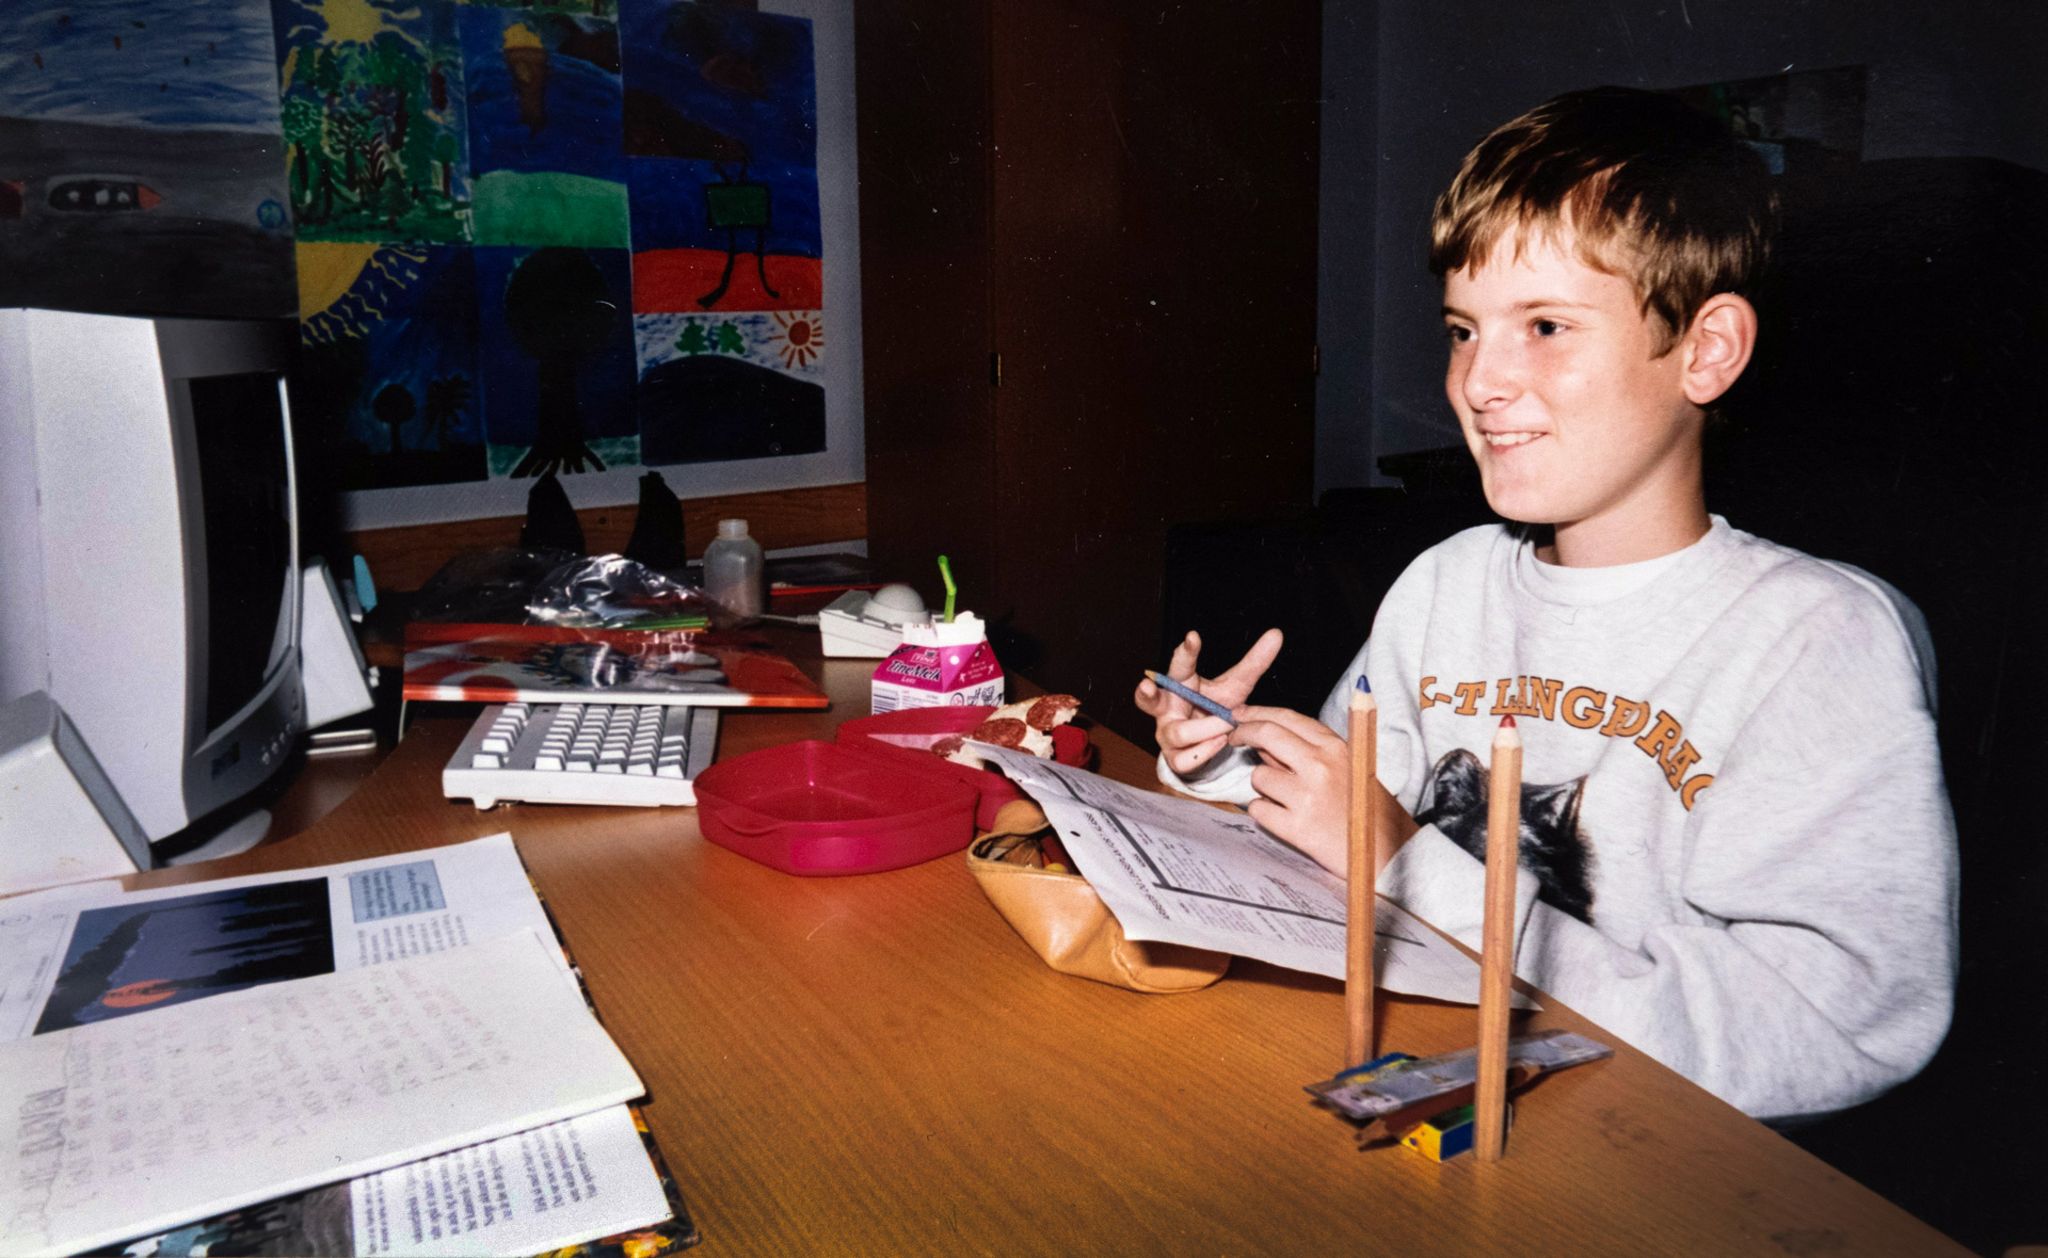 Mats Steen as a child